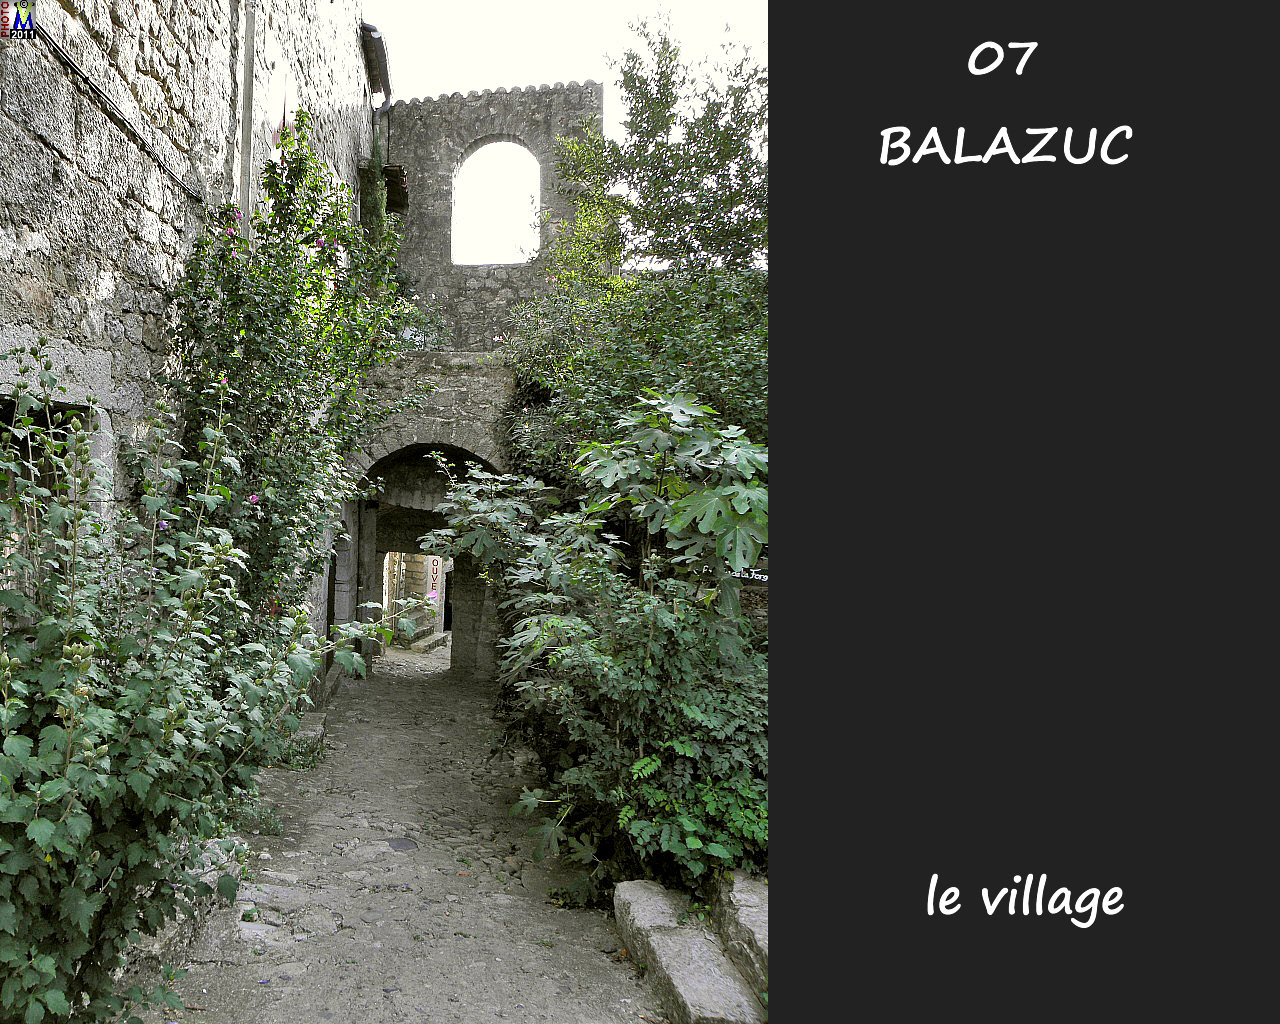 07BALAZUC_village_136.jpg